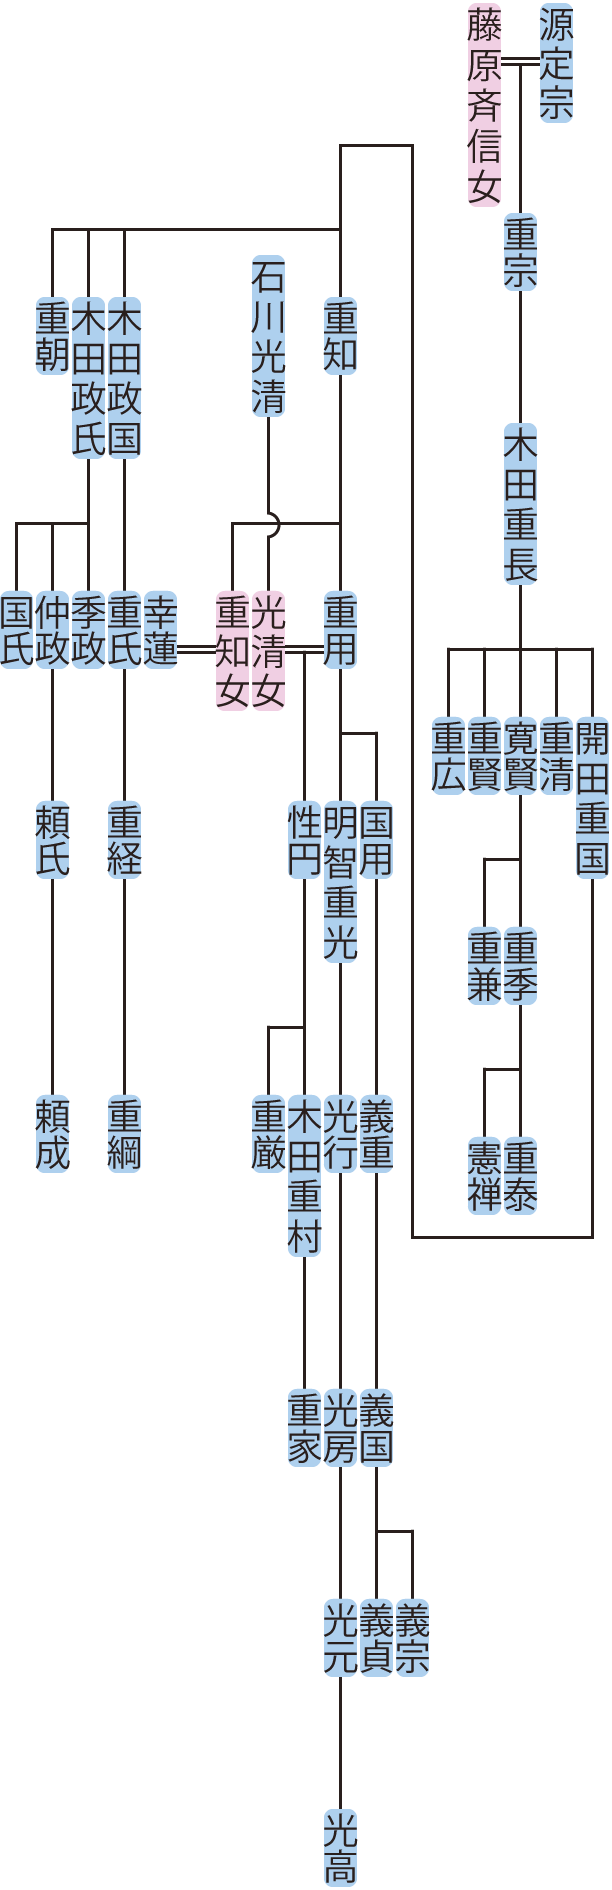 木田重長の系図